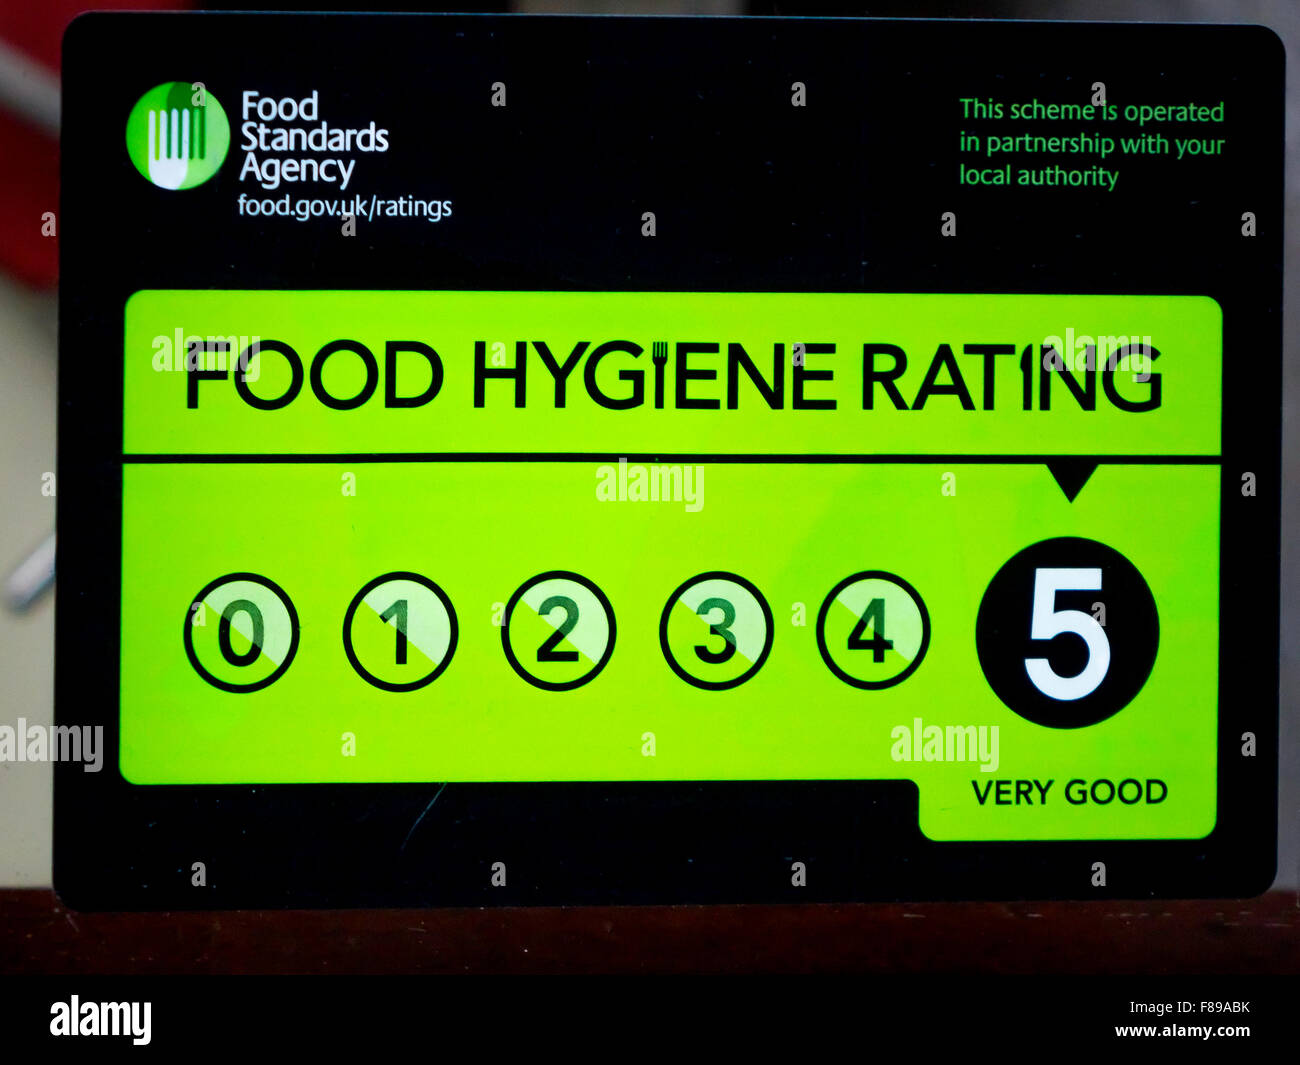 Agenzia per le norme alimentari avviso di incisione su una finestra di café alto livello di rating 5 molto buona Foto Stock